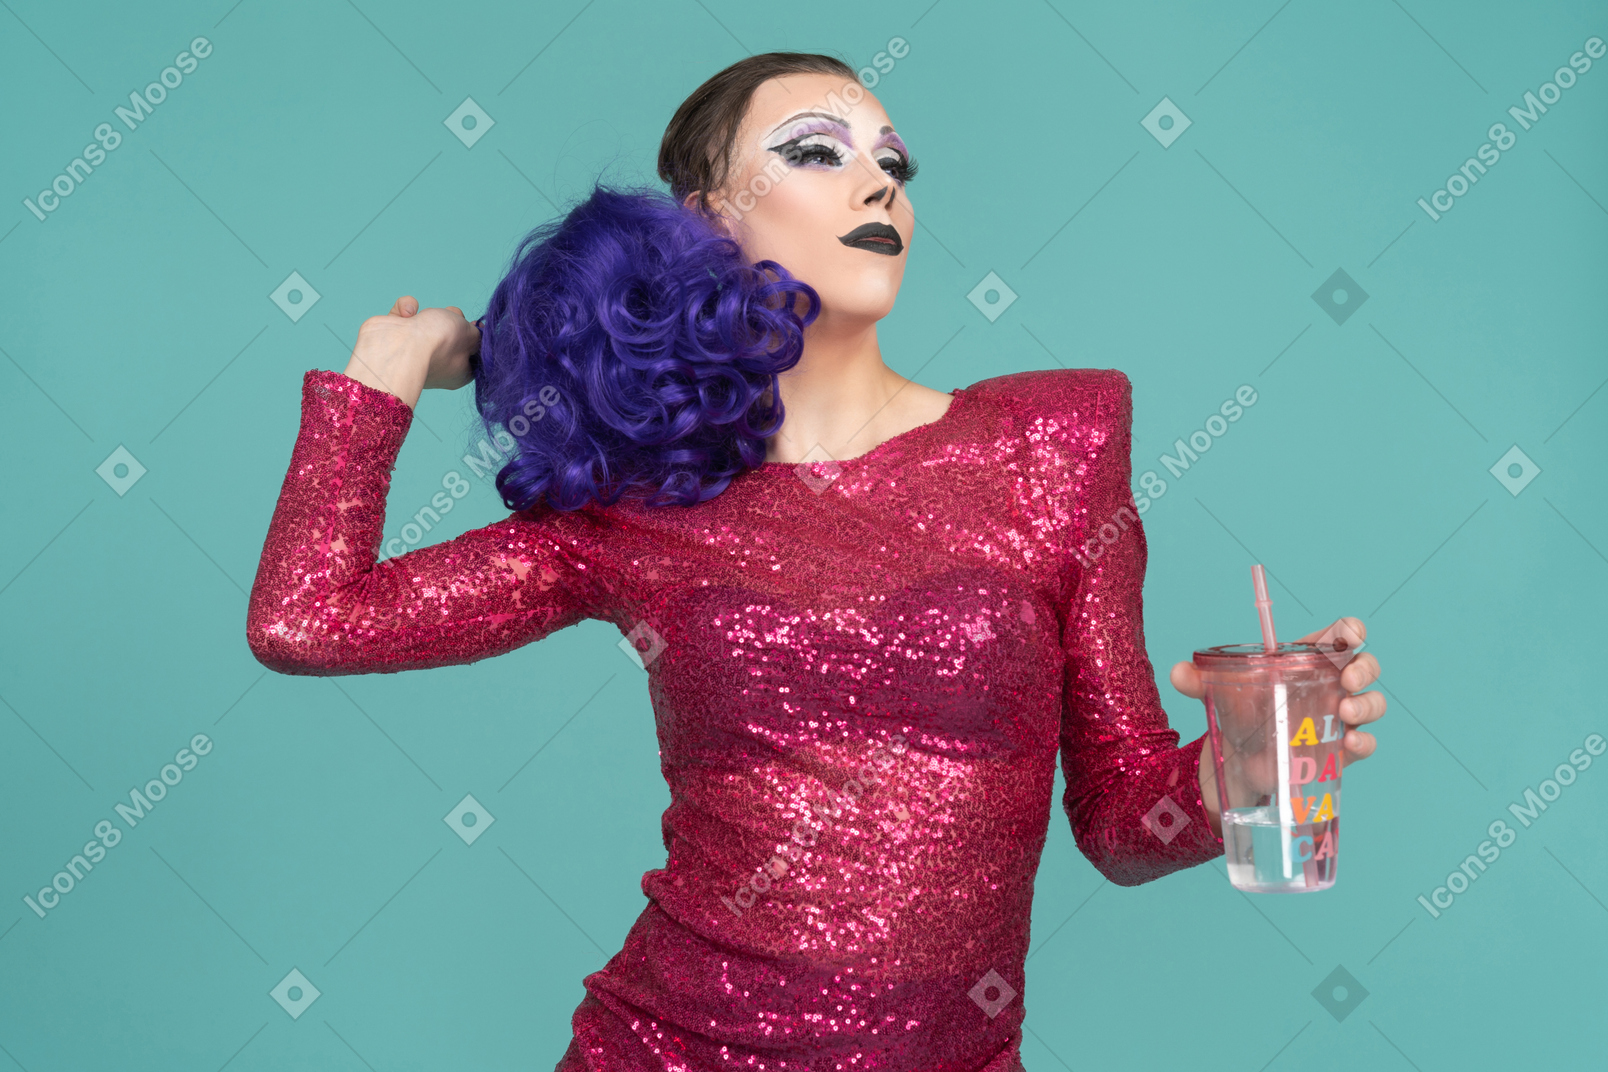 Drag queen in abito rosa che sembra sicura di sé con un drink in mano